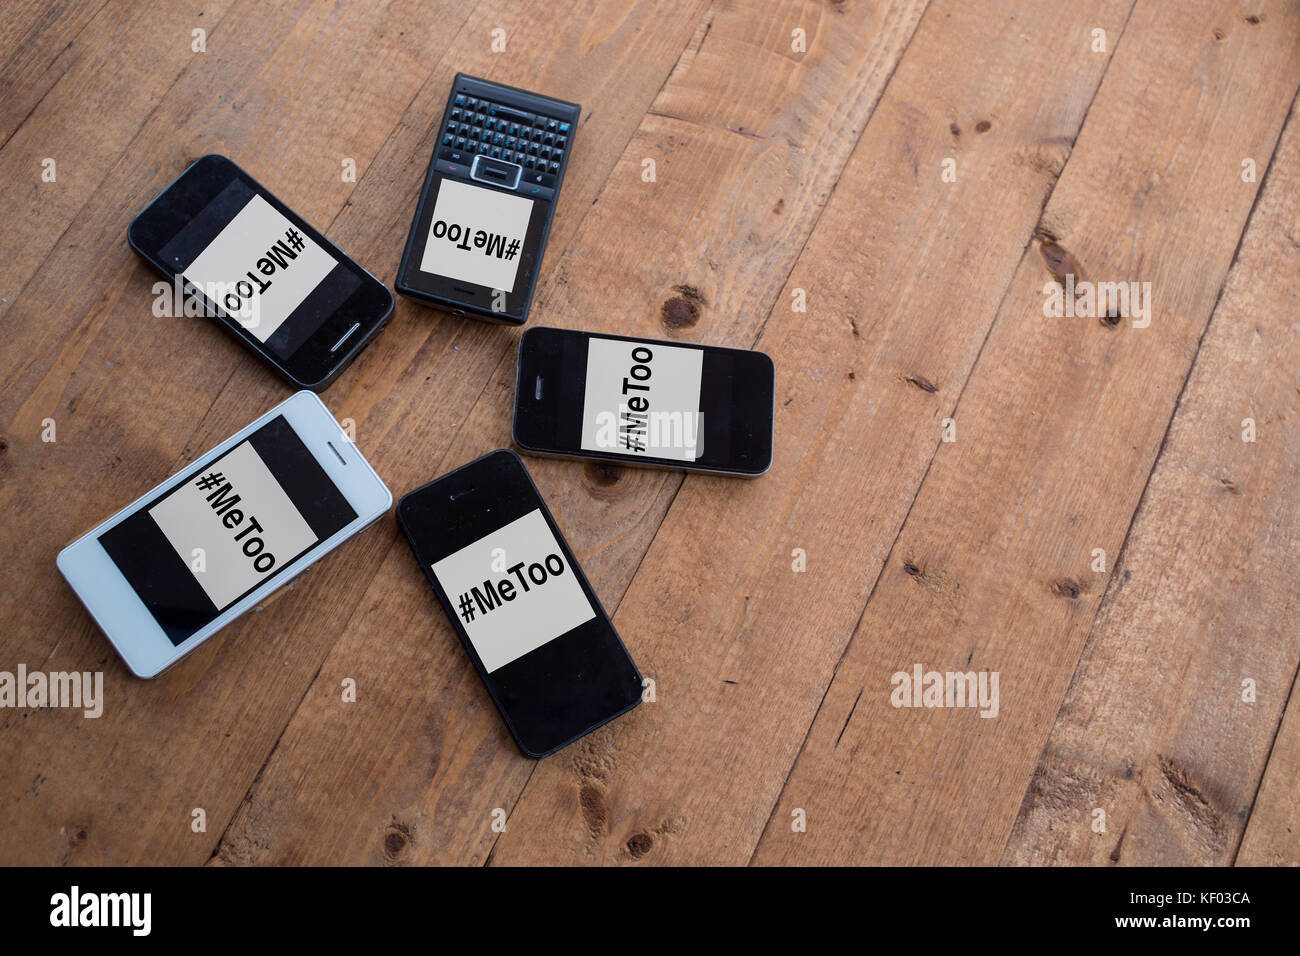 Un tas de smartphones générique avec des images de la 'metoo' hashtag. Banque D'Images